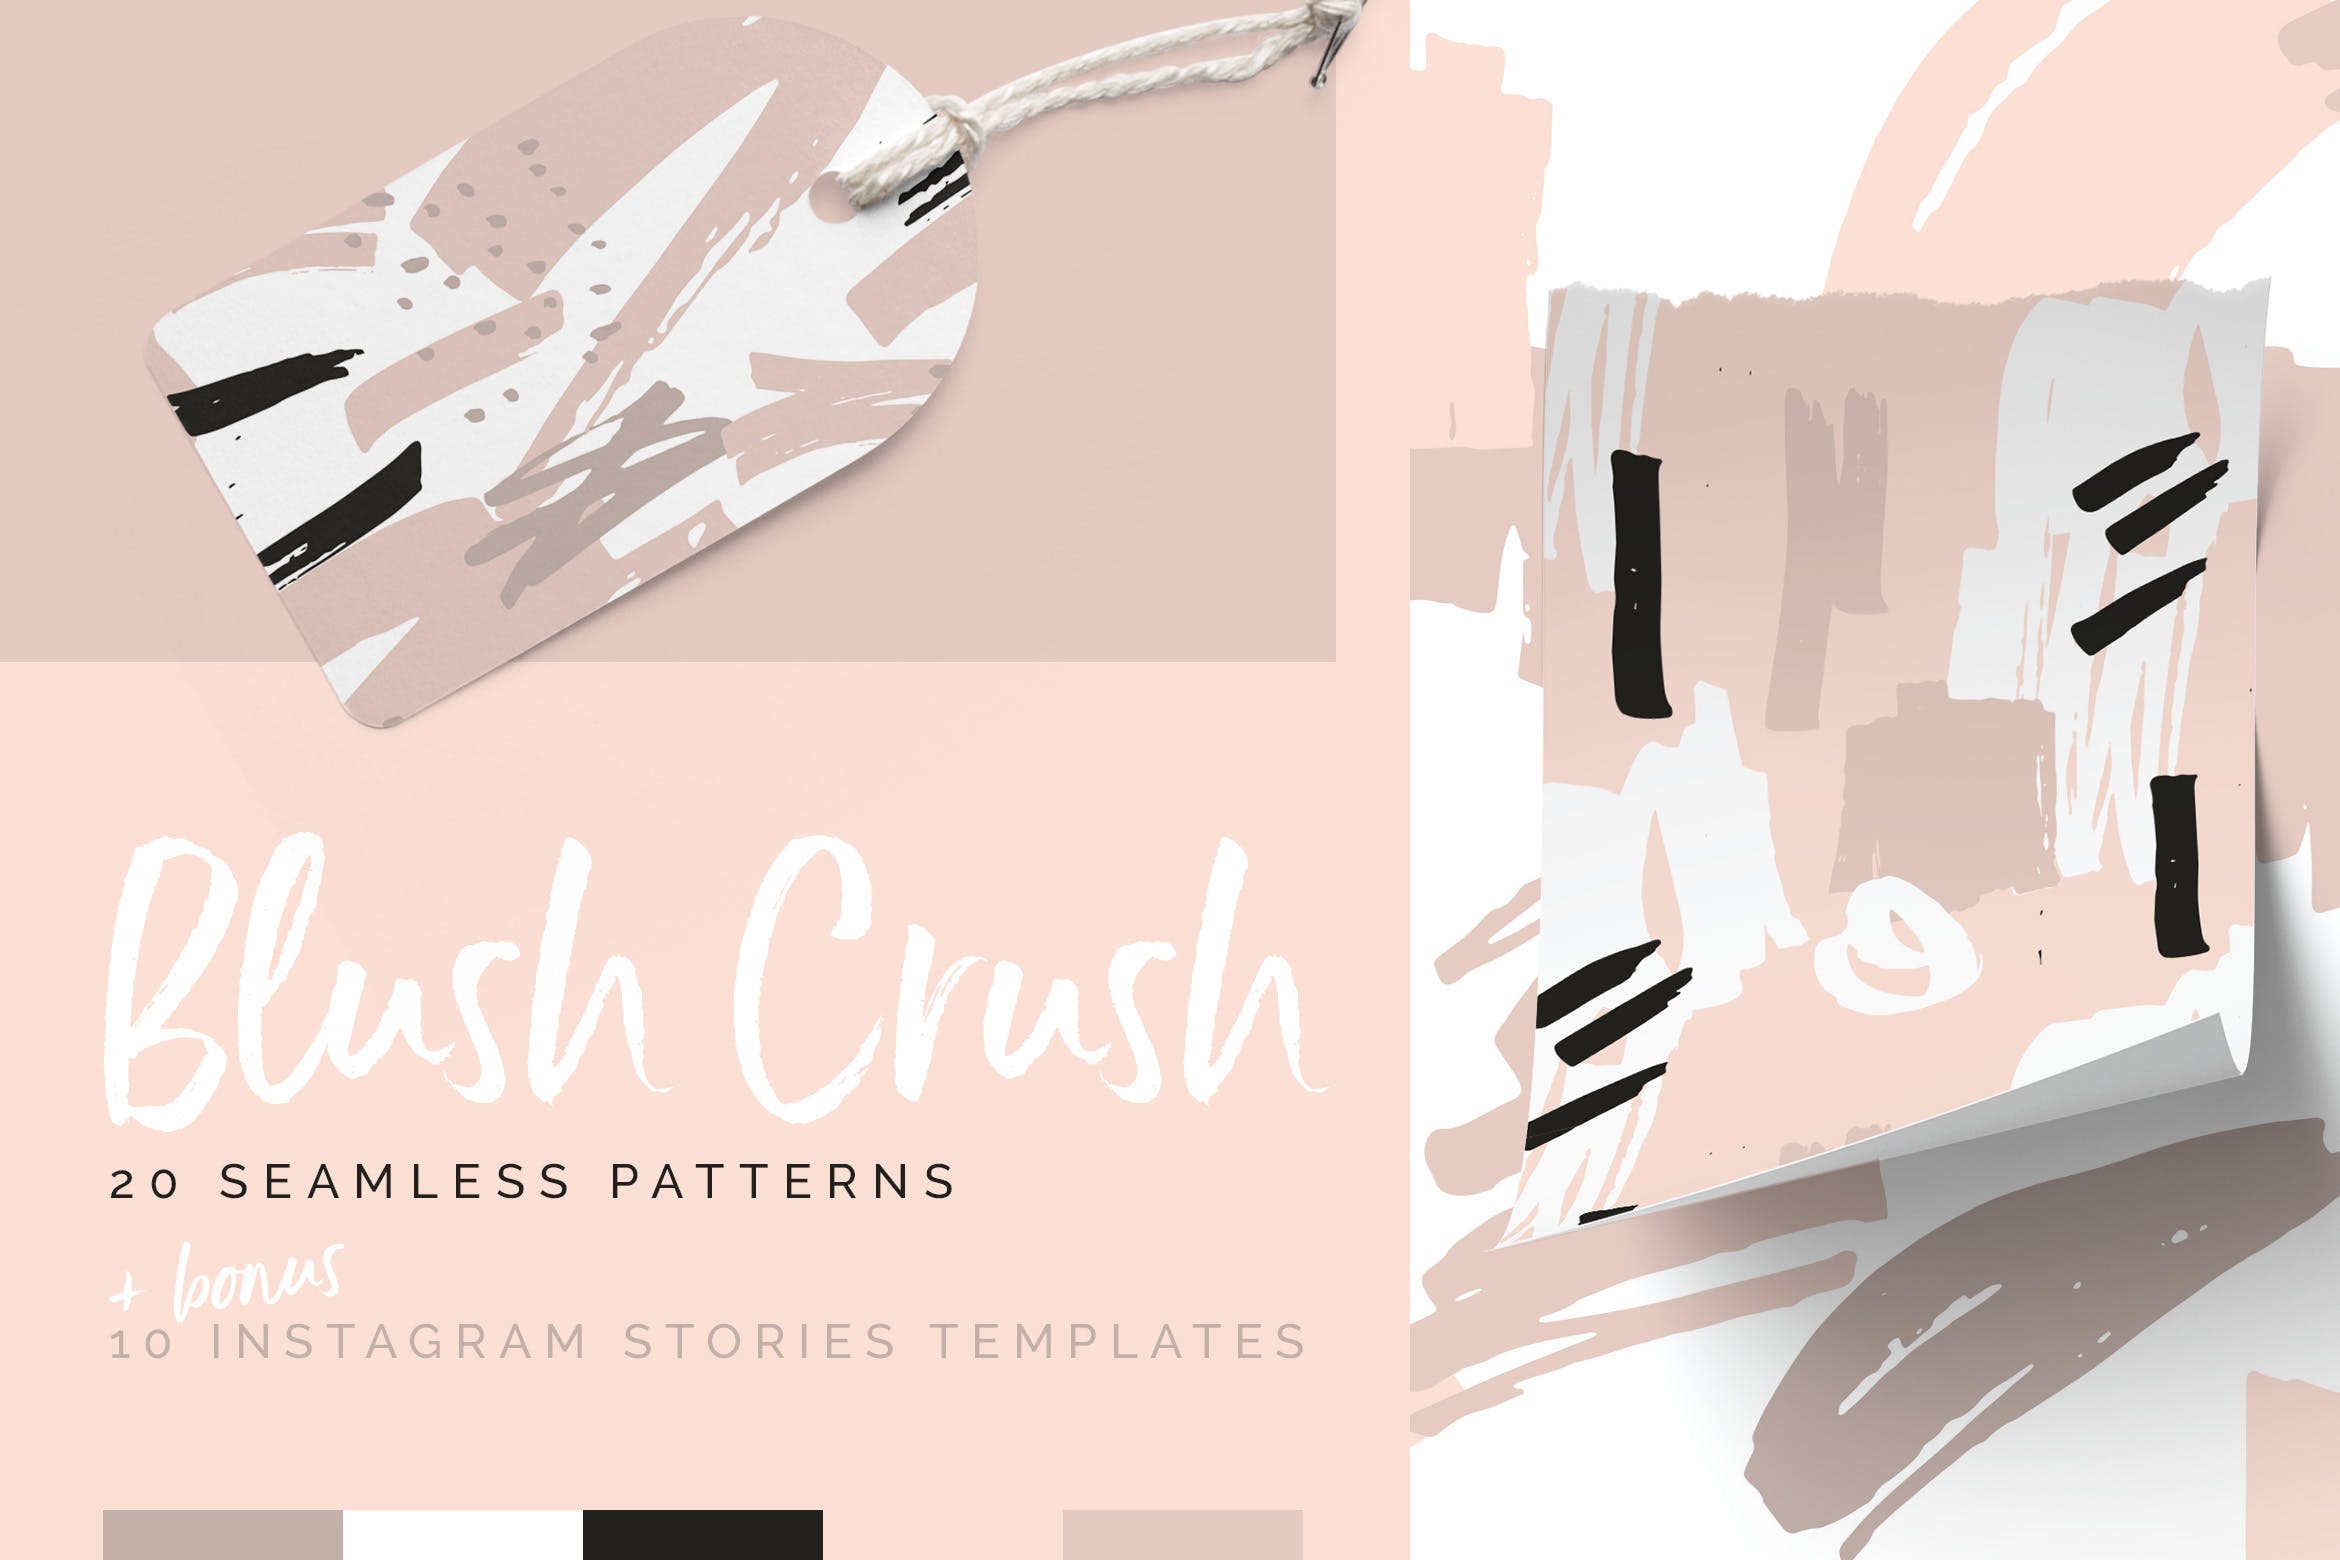 腮红粉红色系列装饰图案花纹素材Blush Crush Patterns Instagram Templates